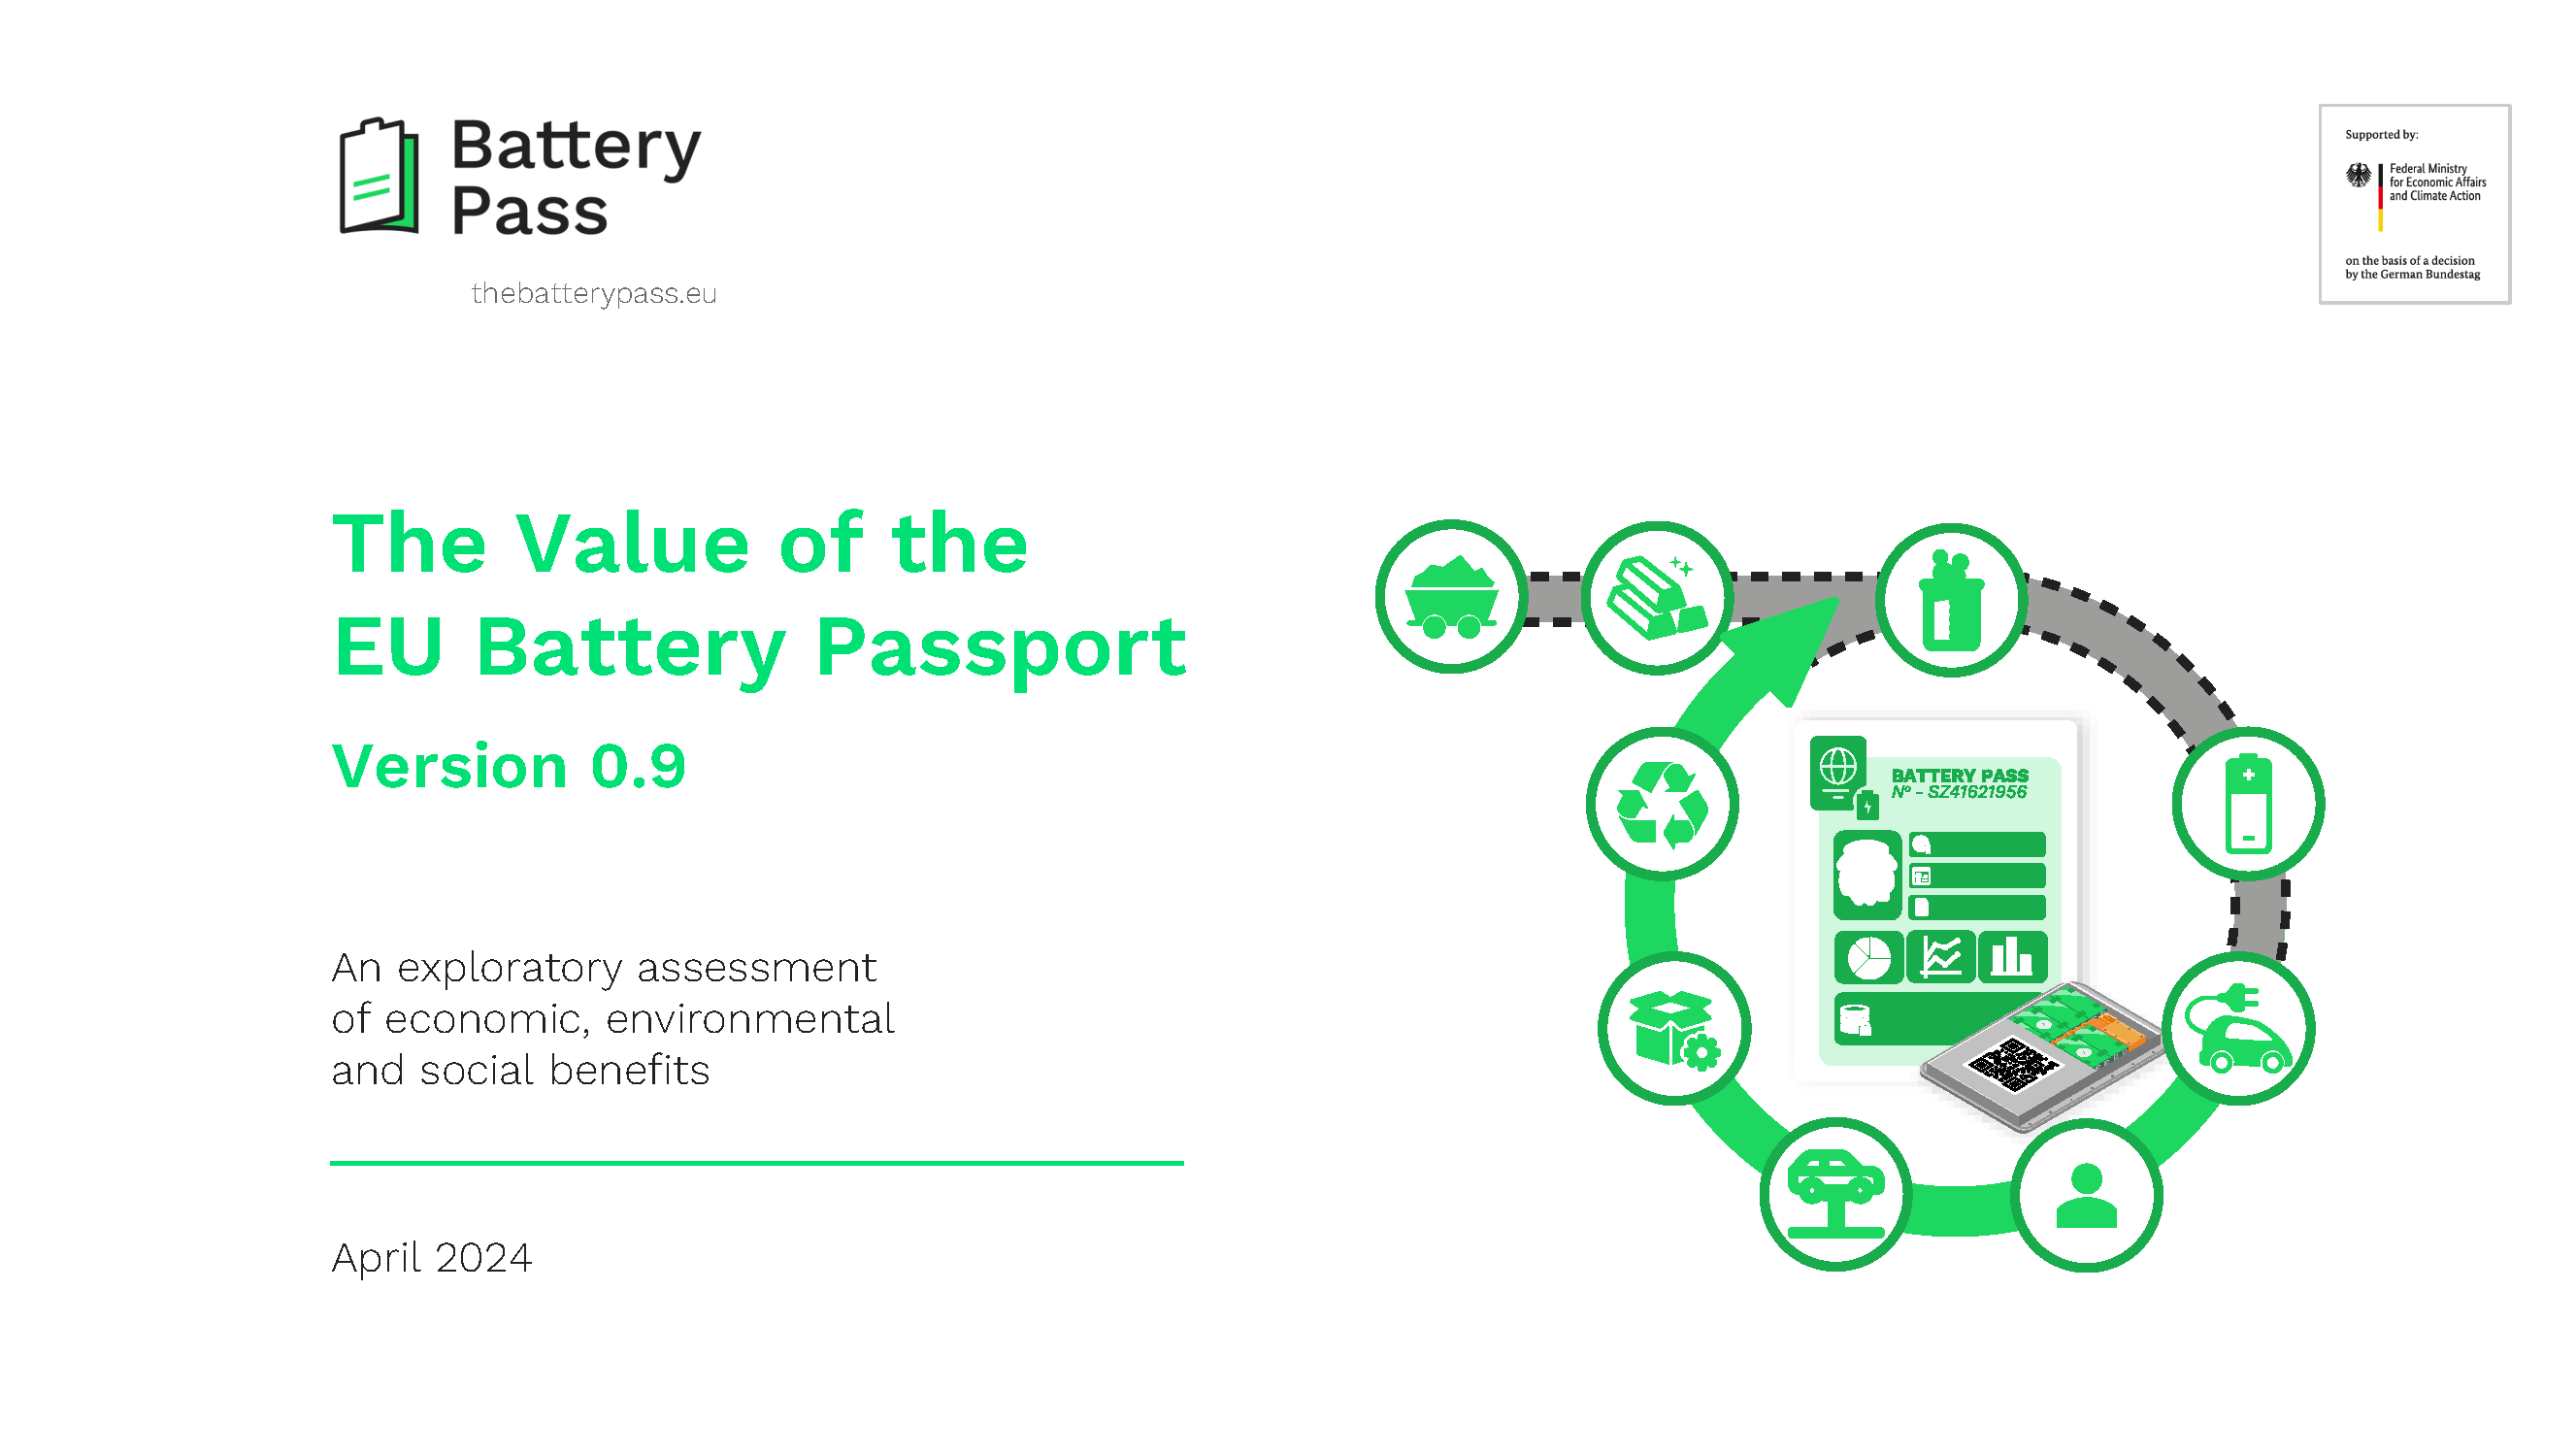 Battery Passport Value Assessment Cover